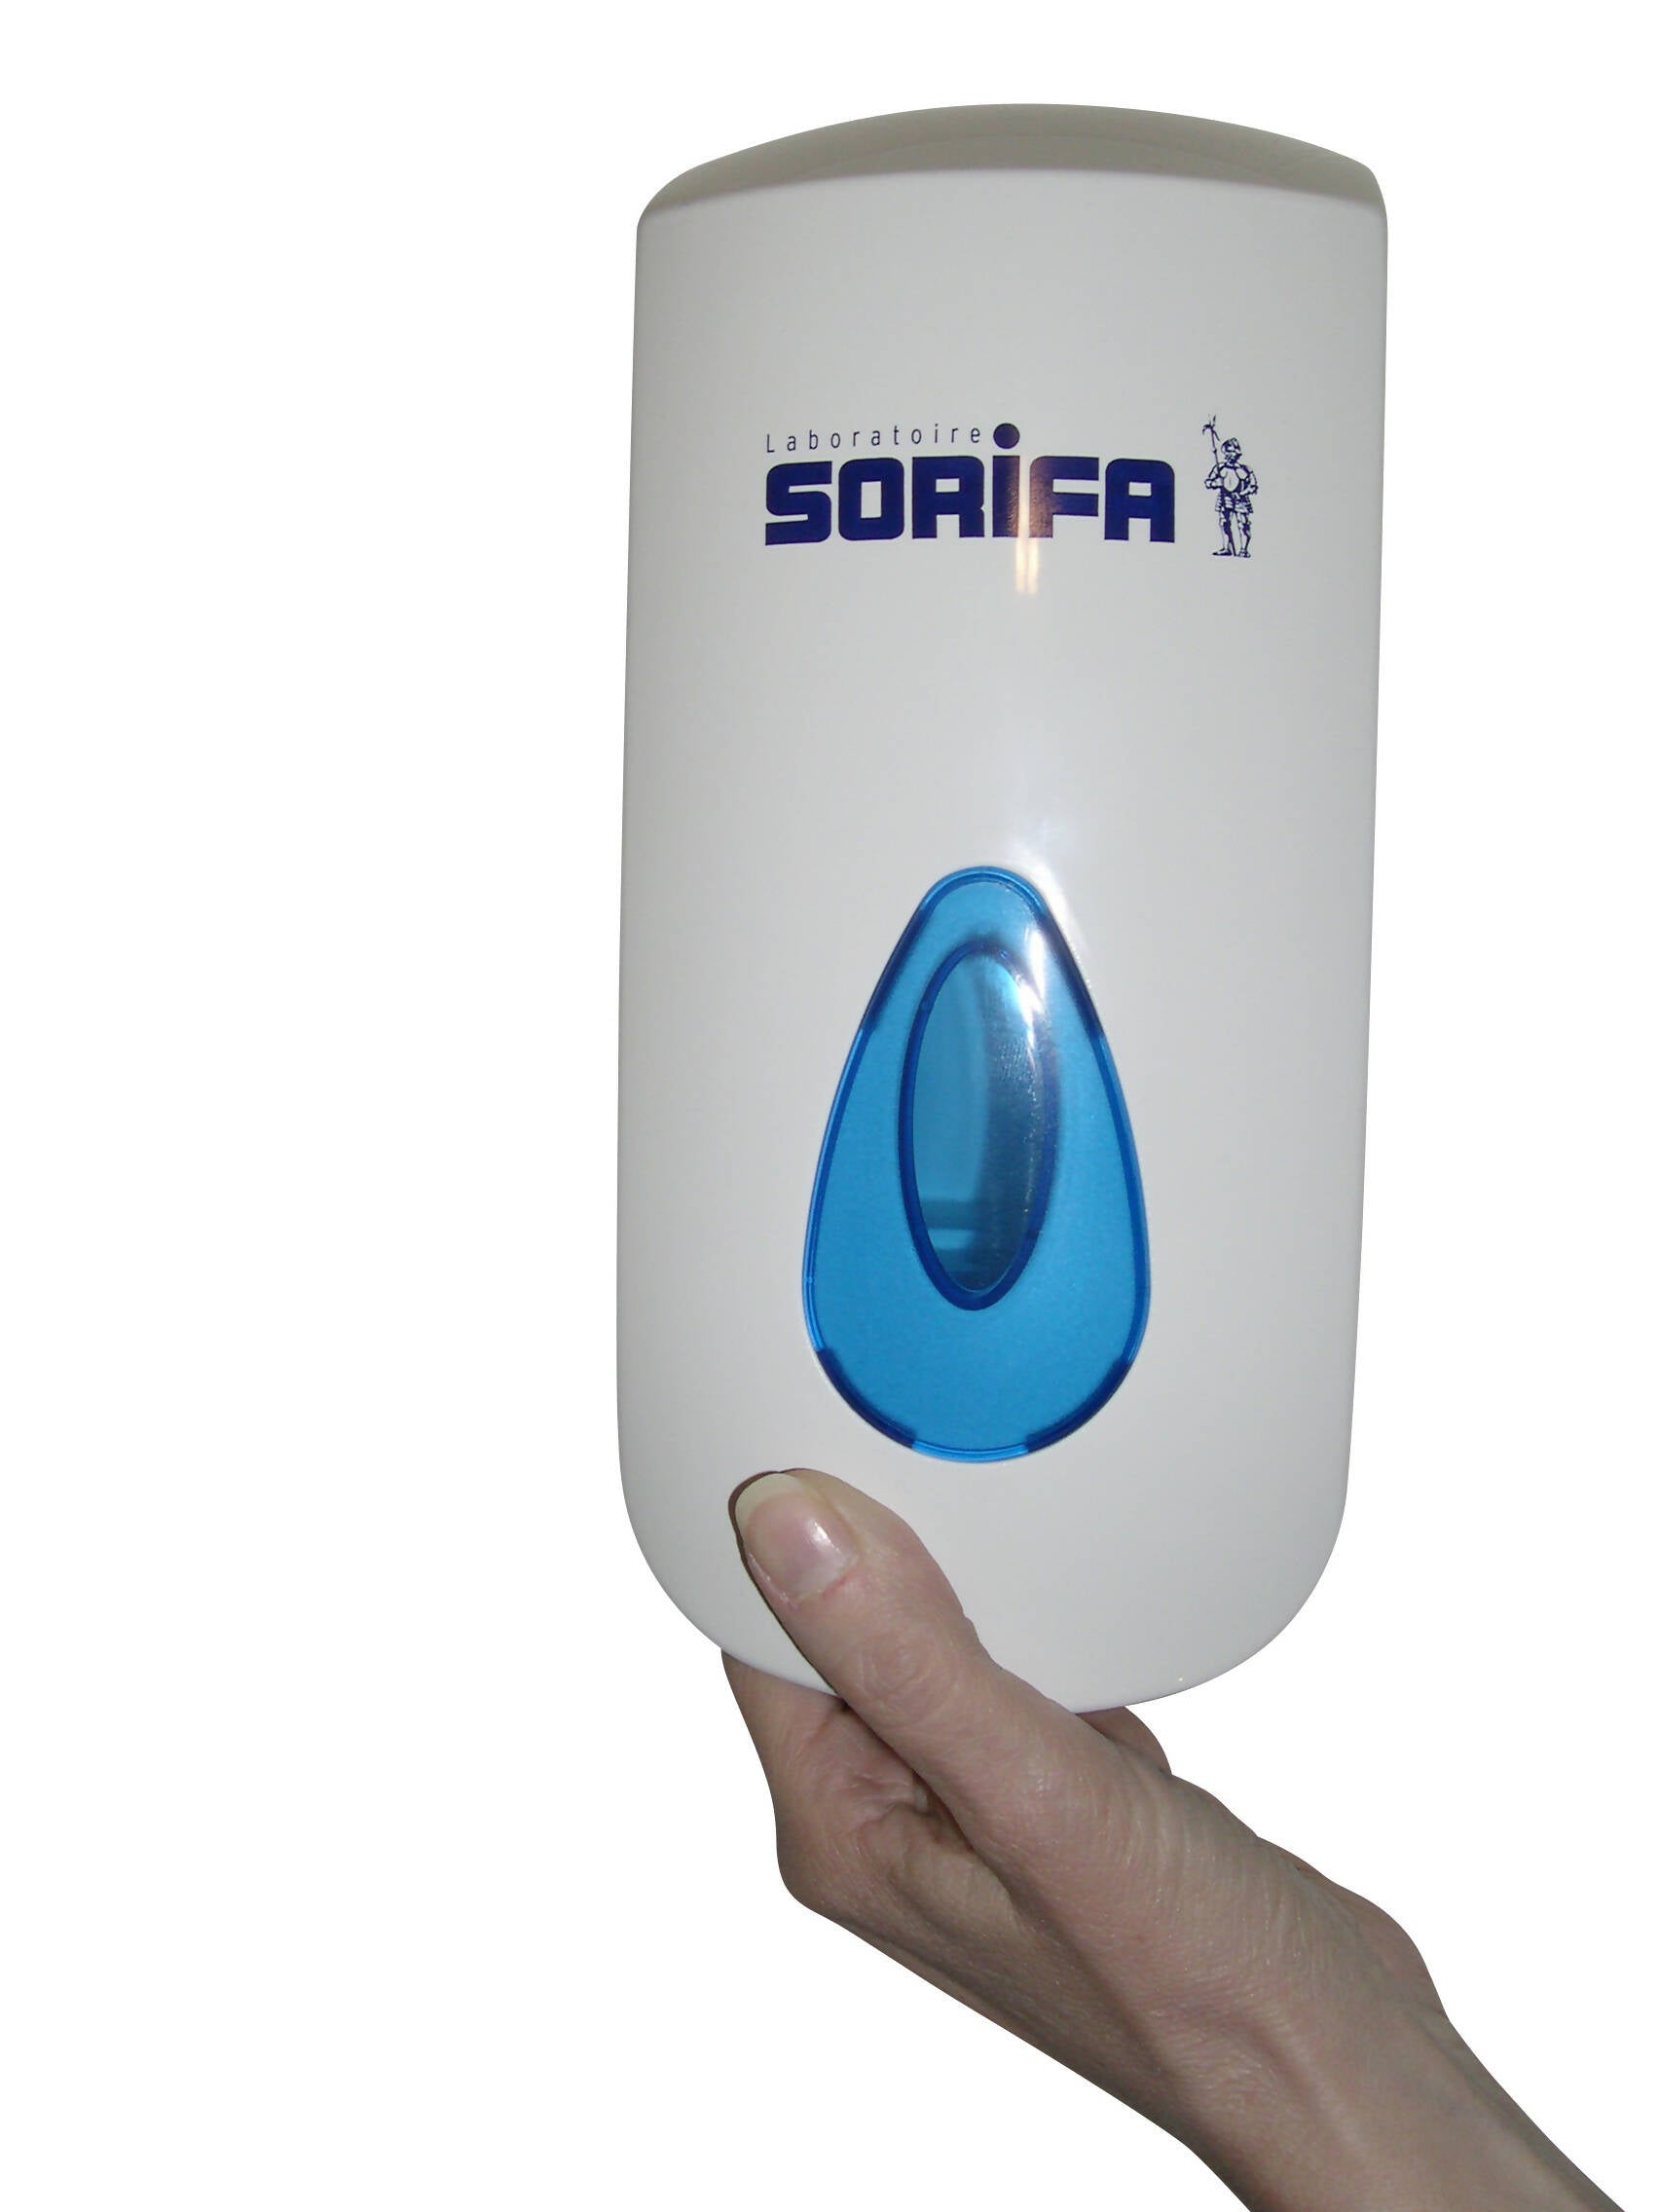 SORIFA - Distributeur mural métallique robuste, ergonomique, verrouillable pour flacon 1L de marque SORIFA - Pour gels et savons liquides.